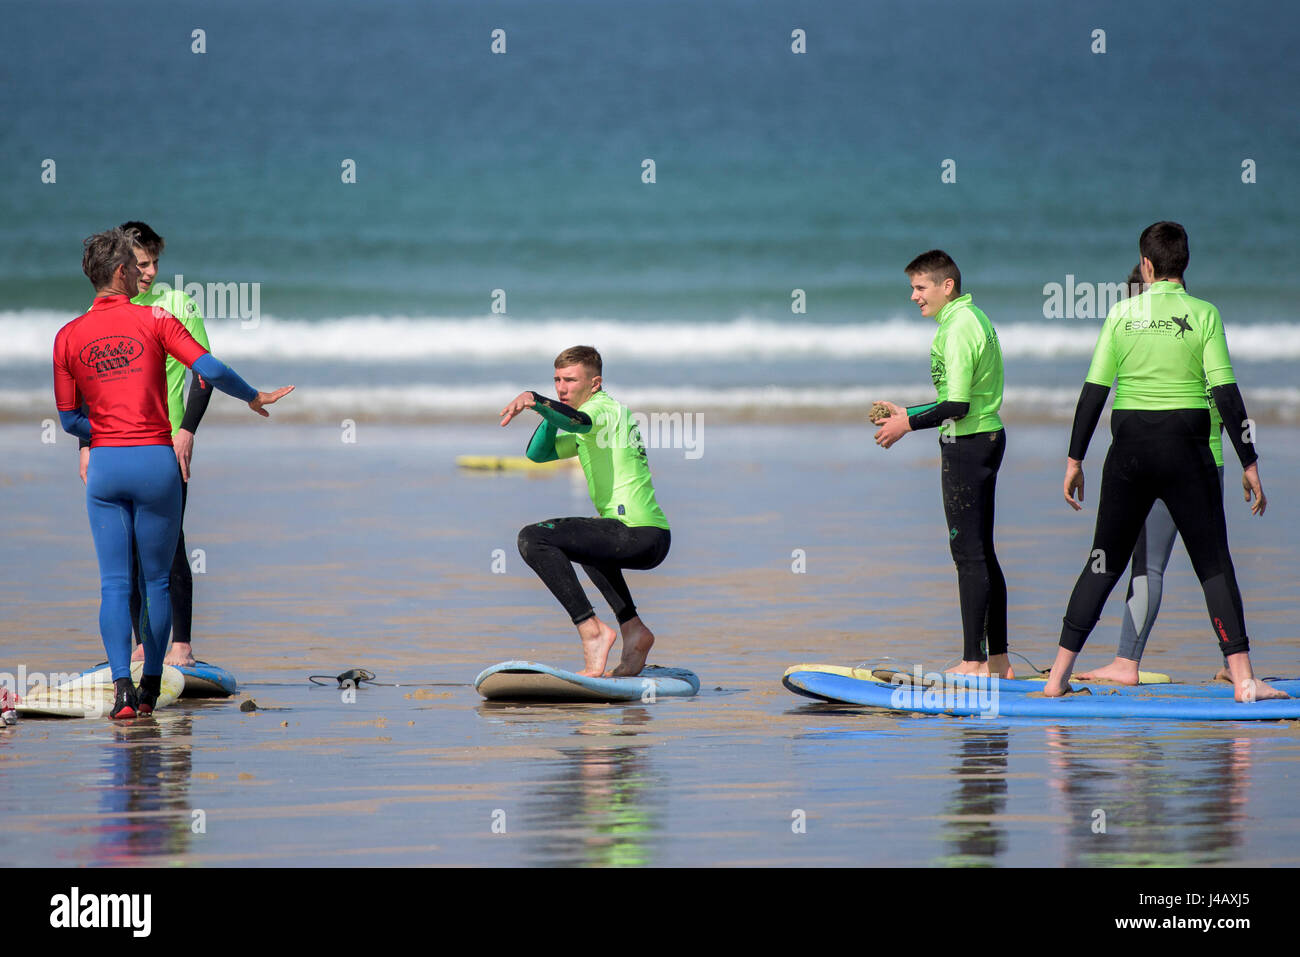 Une école de surf instructeur novices Newquay Cornwall Surf surfer l'apprentissage des apprenants de l'enseignement Coaching Formation Banque D'Images